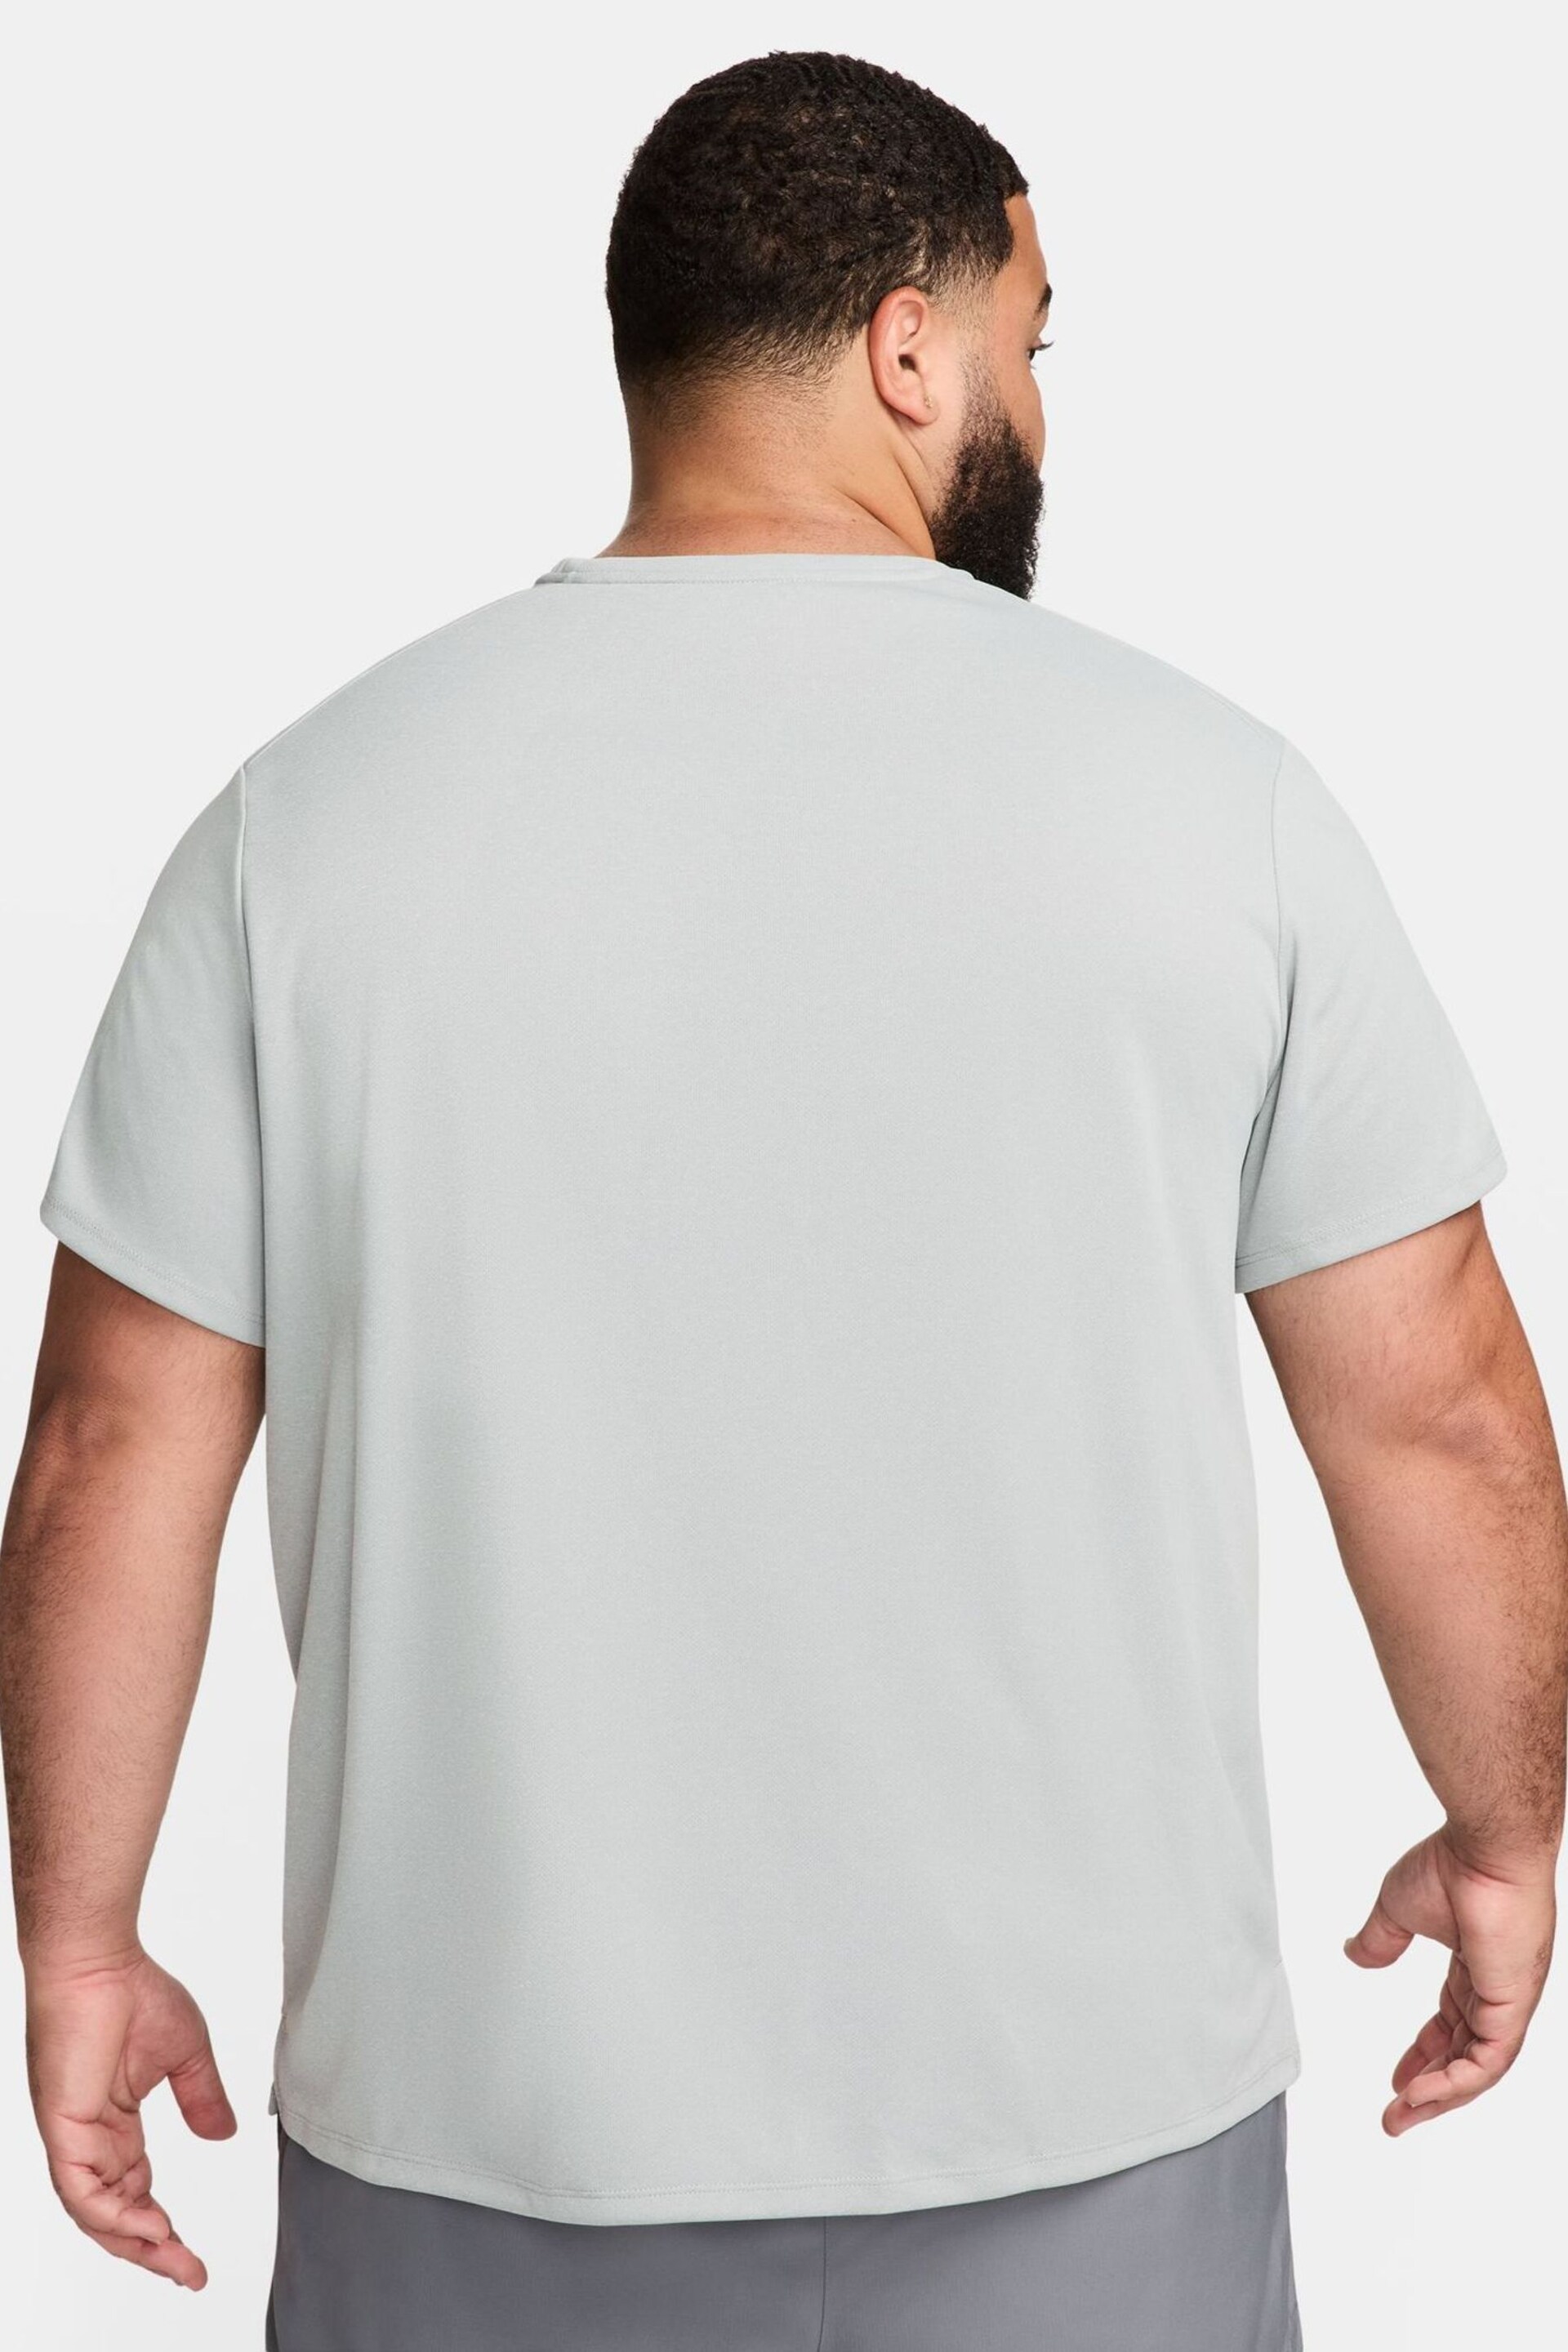 Nike Light Grey Miler Dri-FIT UV Running T-Shirt - Image 10 of 13